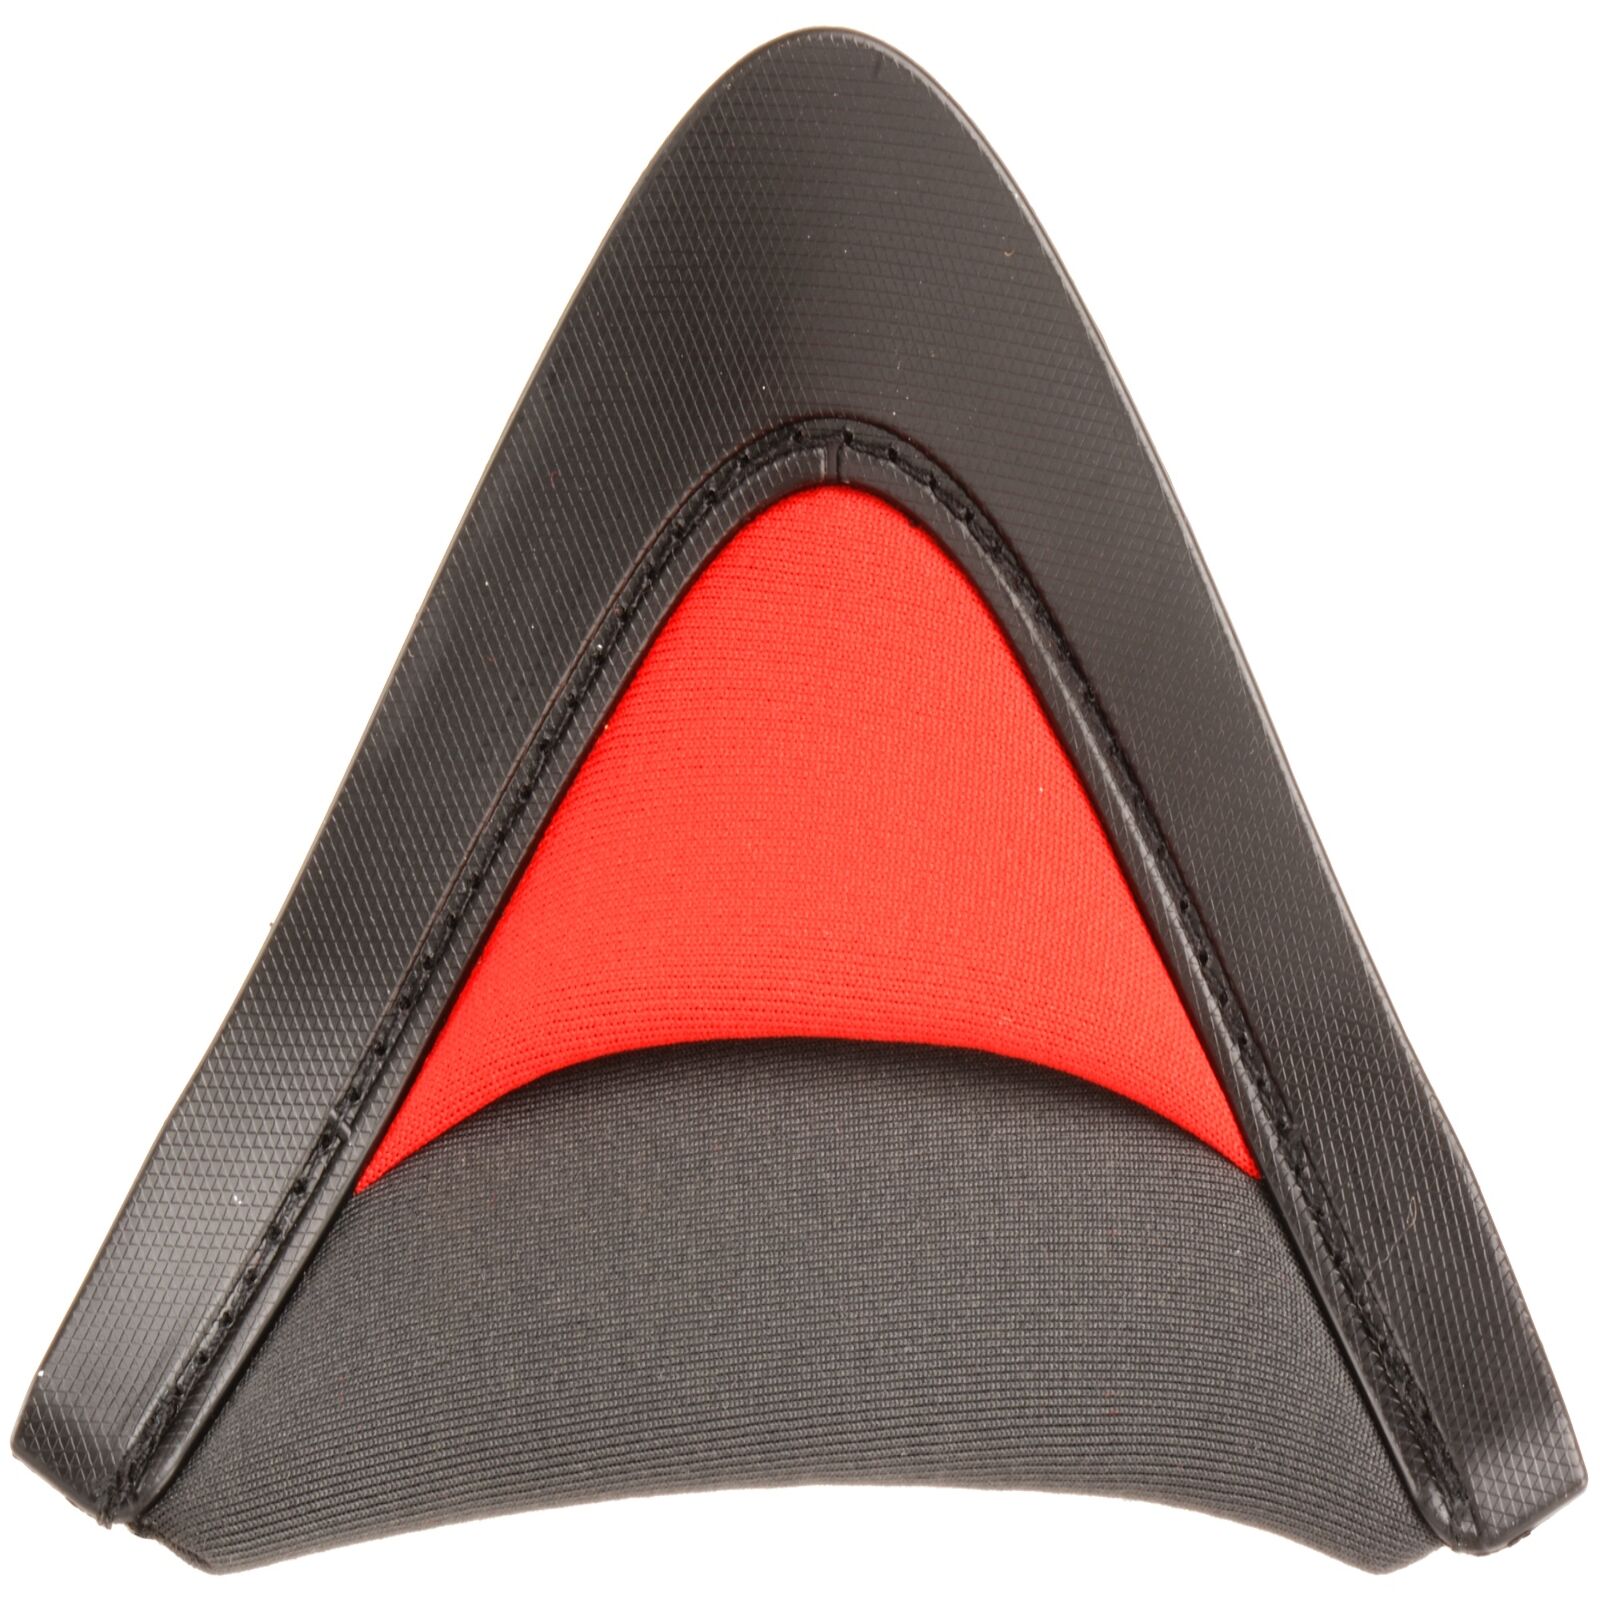 Obrázek produktu bradový deflektor pro přilby N312, NOX BAVN312